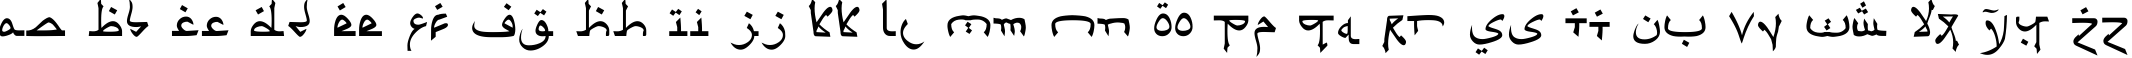 Пример написания английского алфавита шрифтом Psuedo Saudi